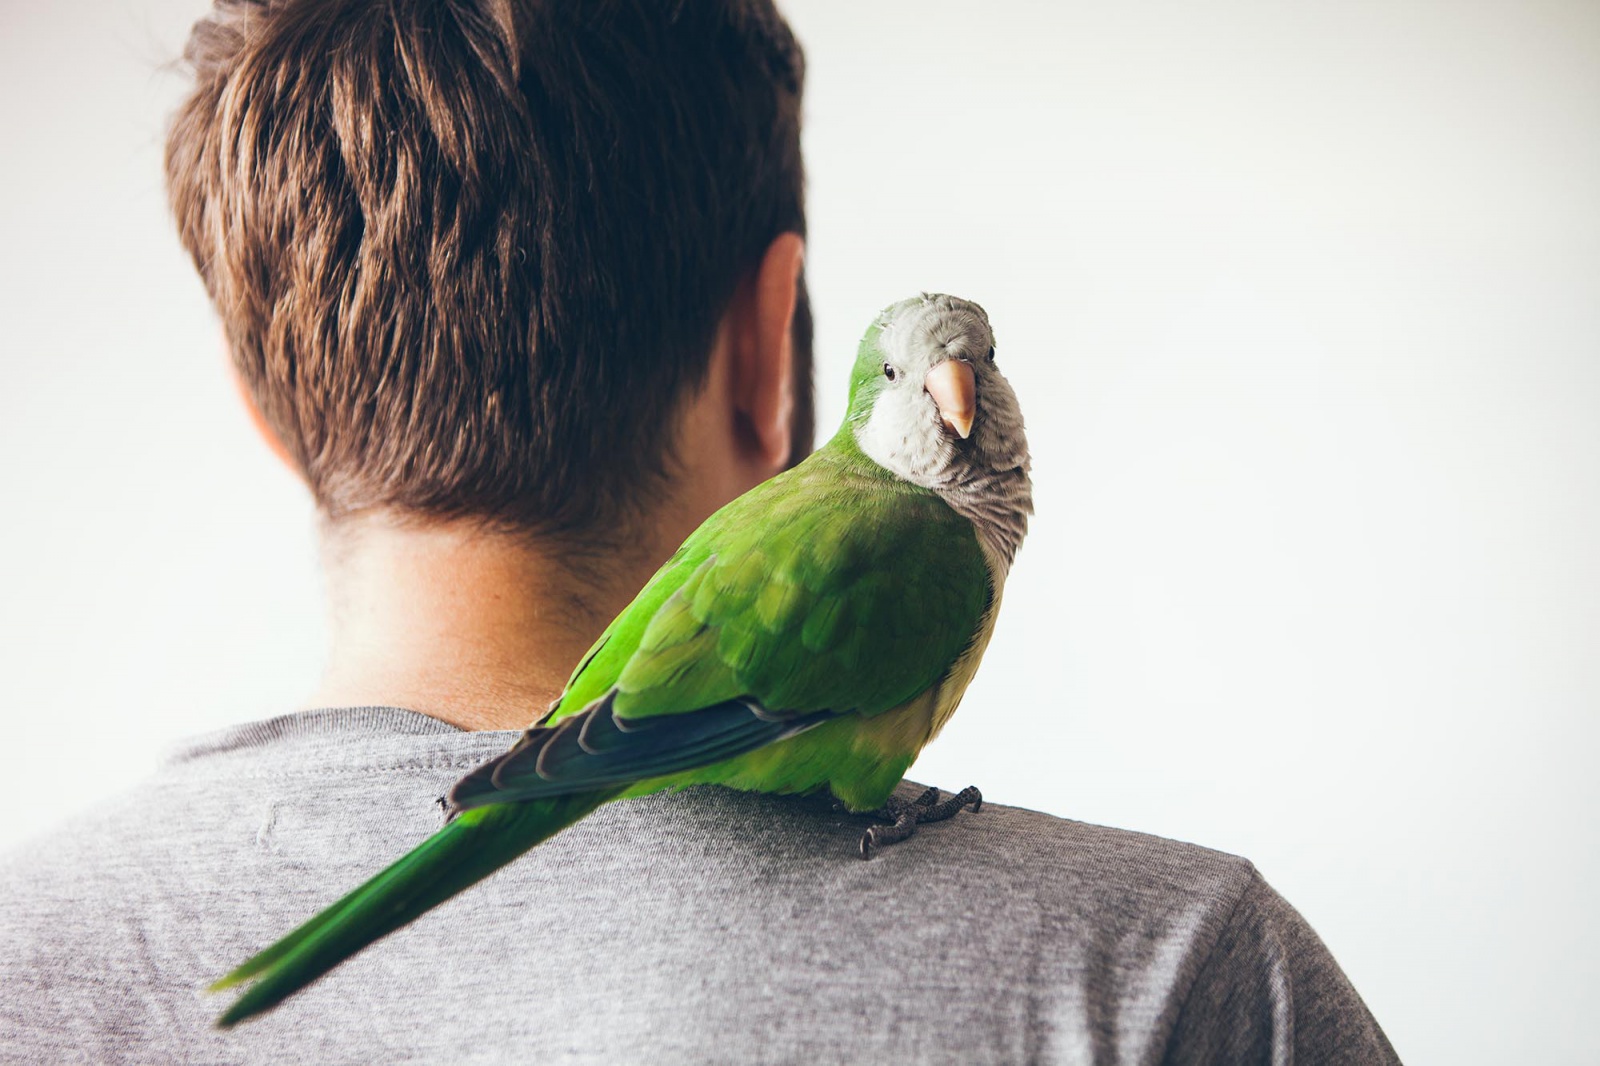 Náladový, upovídaný, věrný. Mít doma papouška není tak snadné, jak se zdá -  Benešovský deník